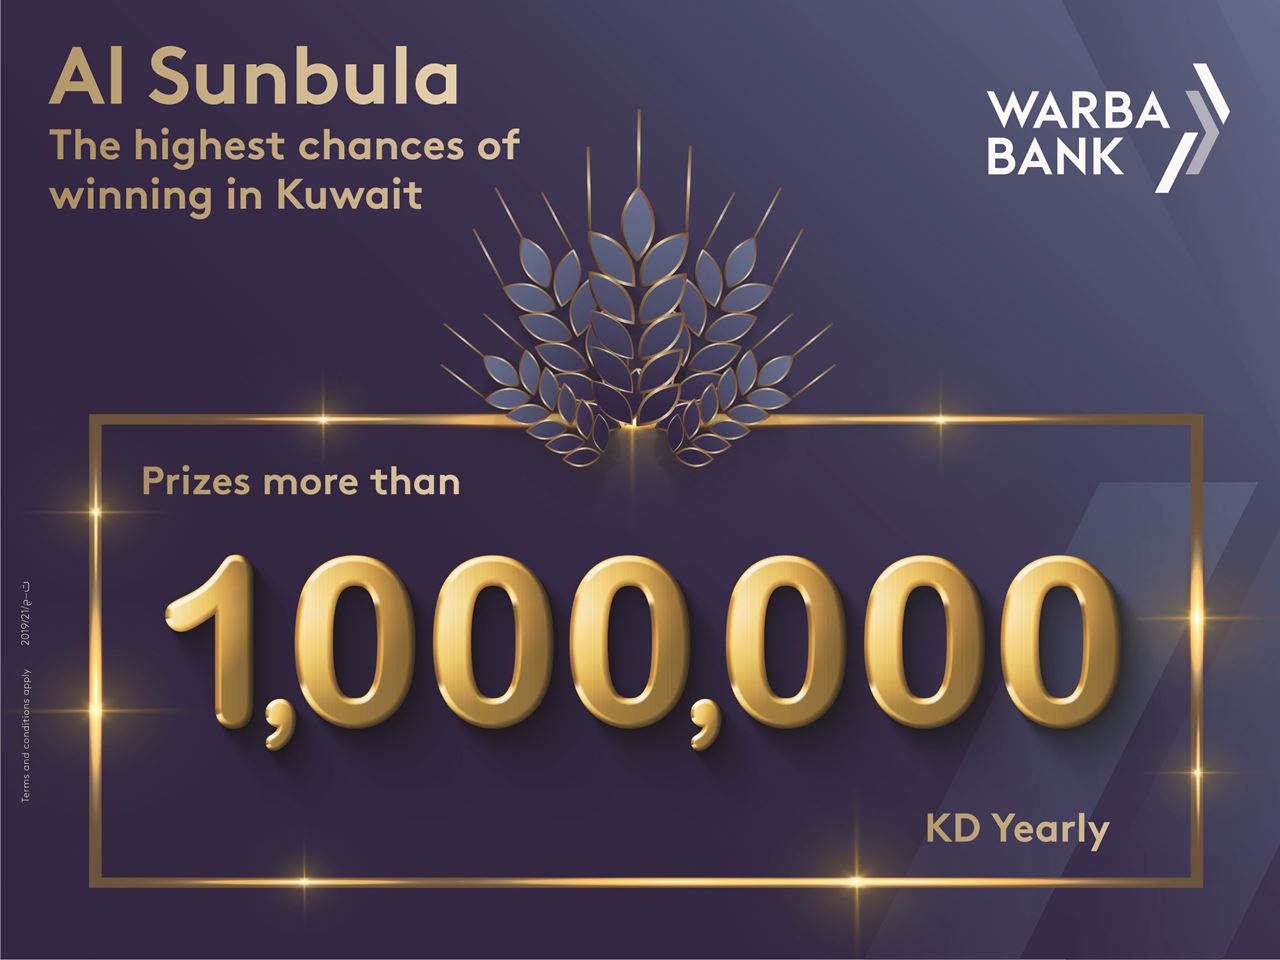 Warba Bank Announces “Al Sunbula” Weekly Draw